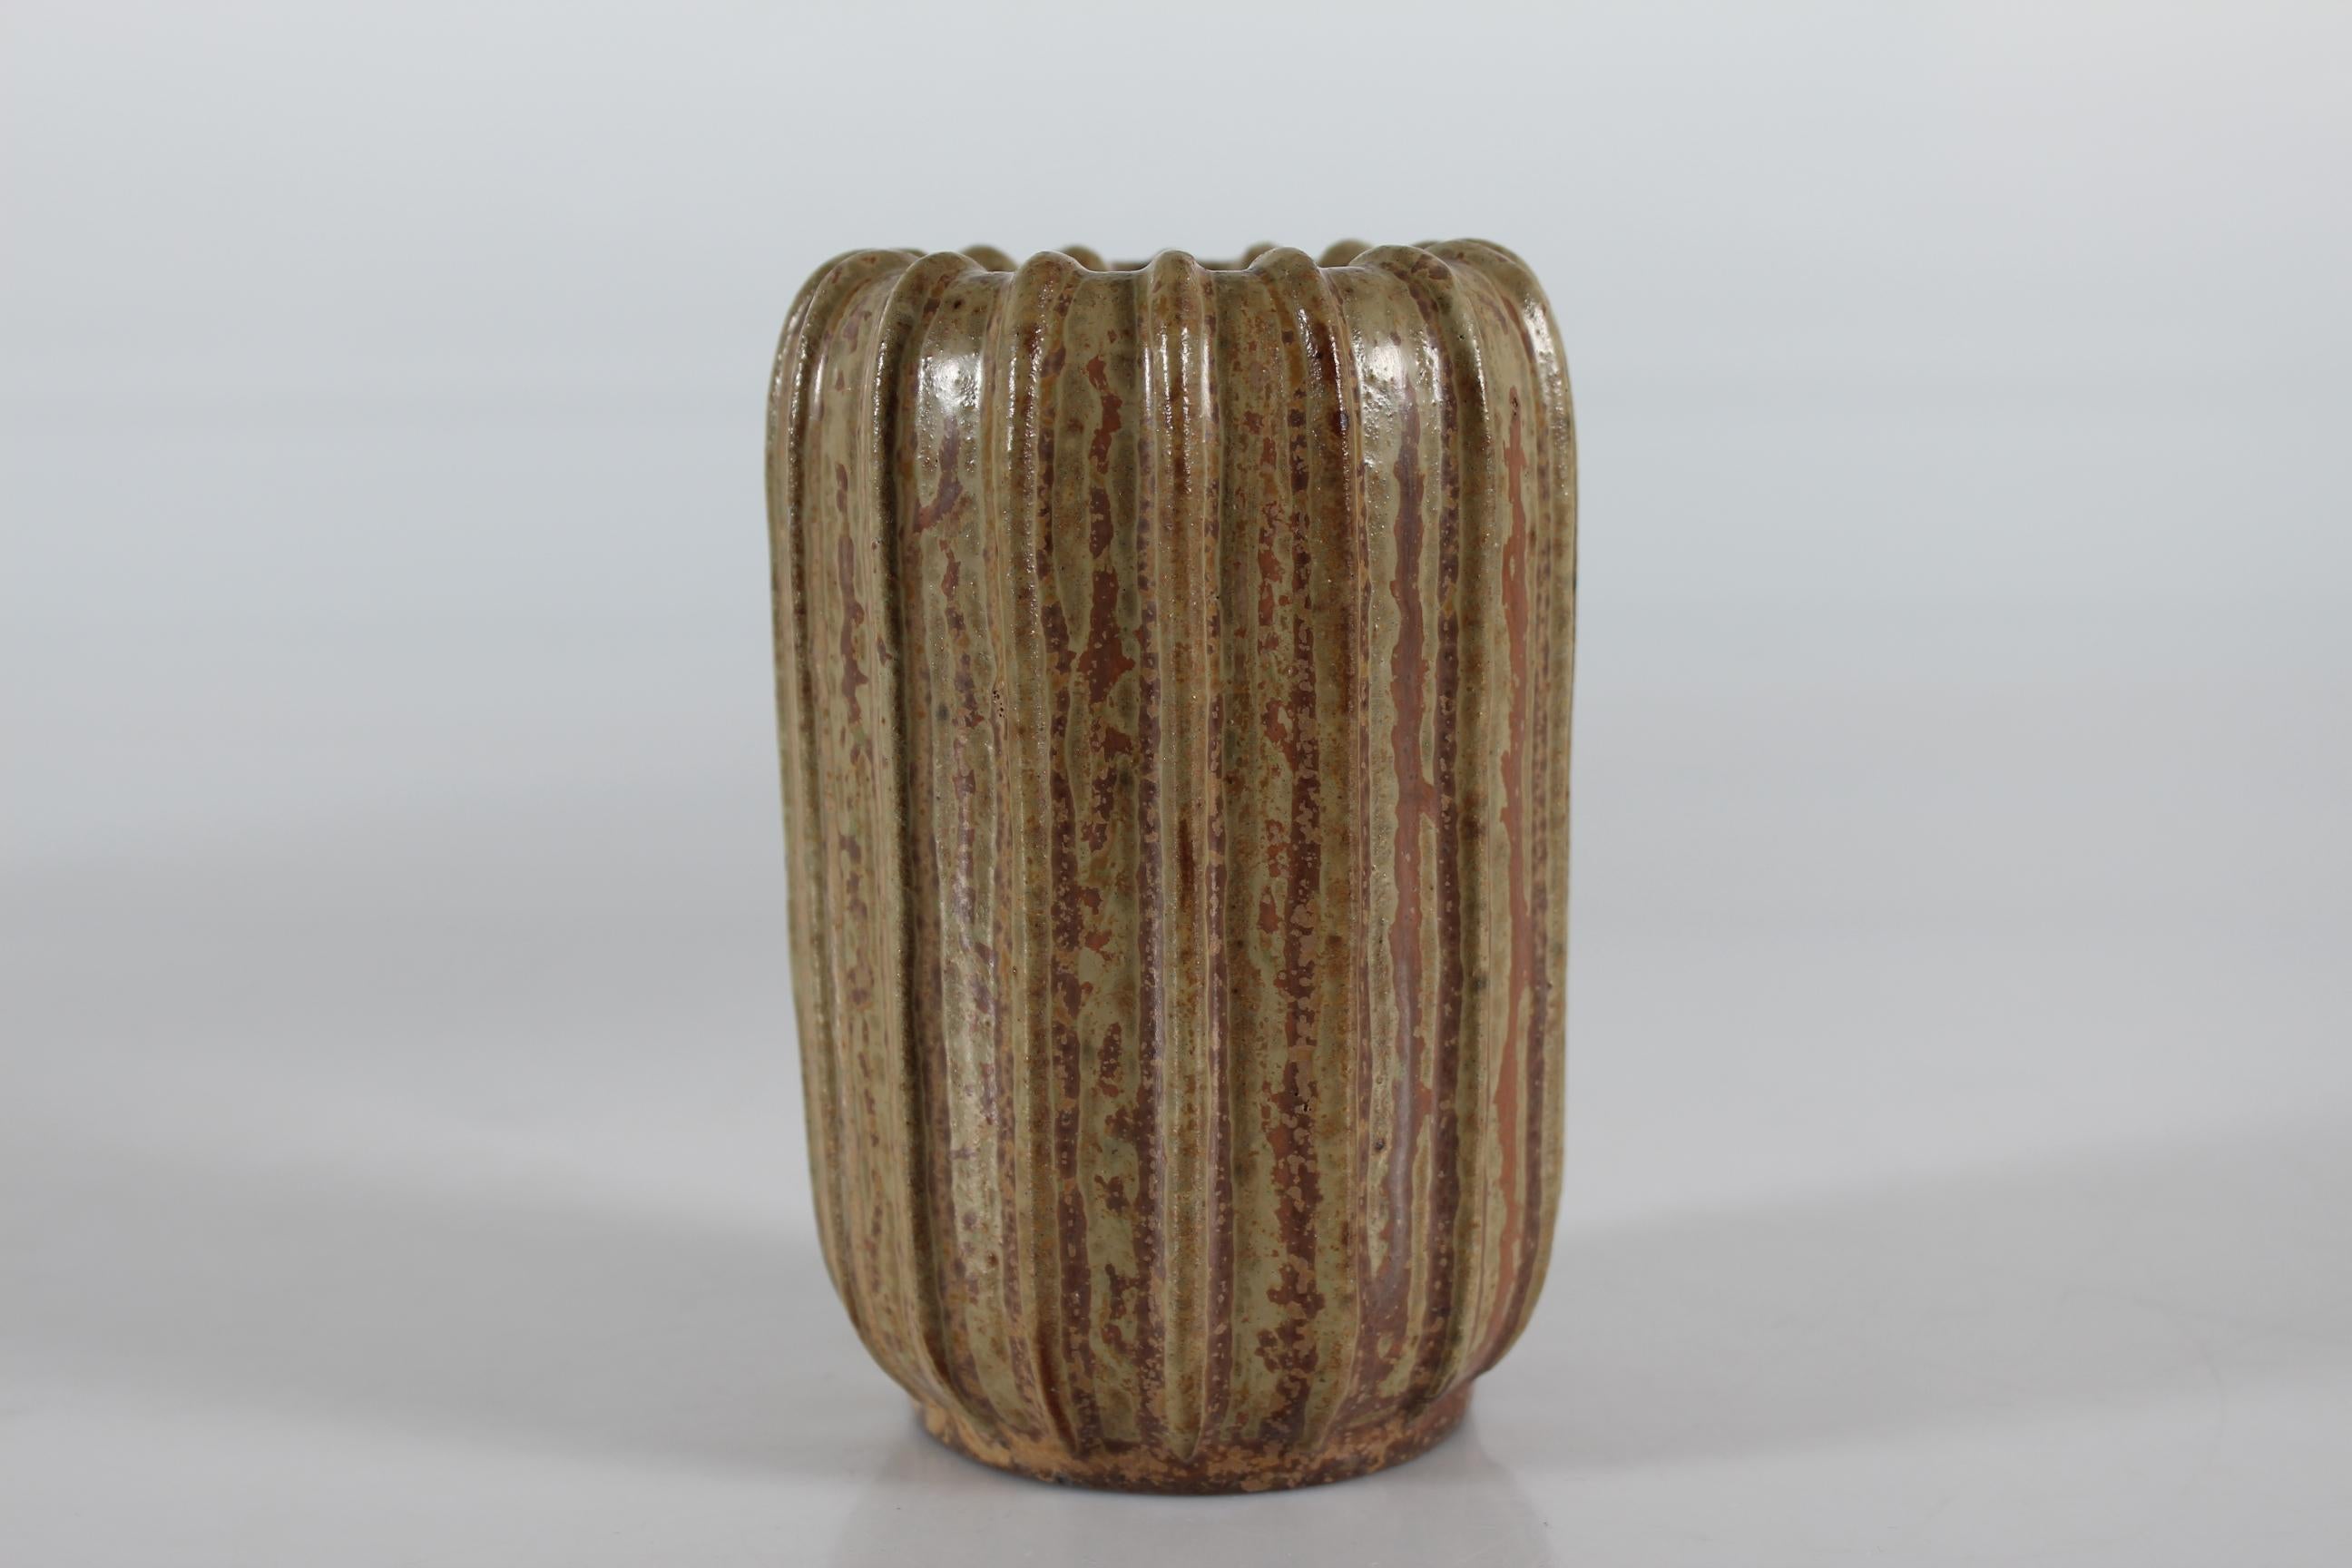 Vase cylindrique cannelé Art Déco du céramiste danois Arne Bang (1901-1983).

Le vase est décoré d'une glaçure mouchetée de couleur brune et terreuse.

Marqué sur le fond d'un monogramme d'Arne Bang et du numéro 37.

Bon état vintage sans